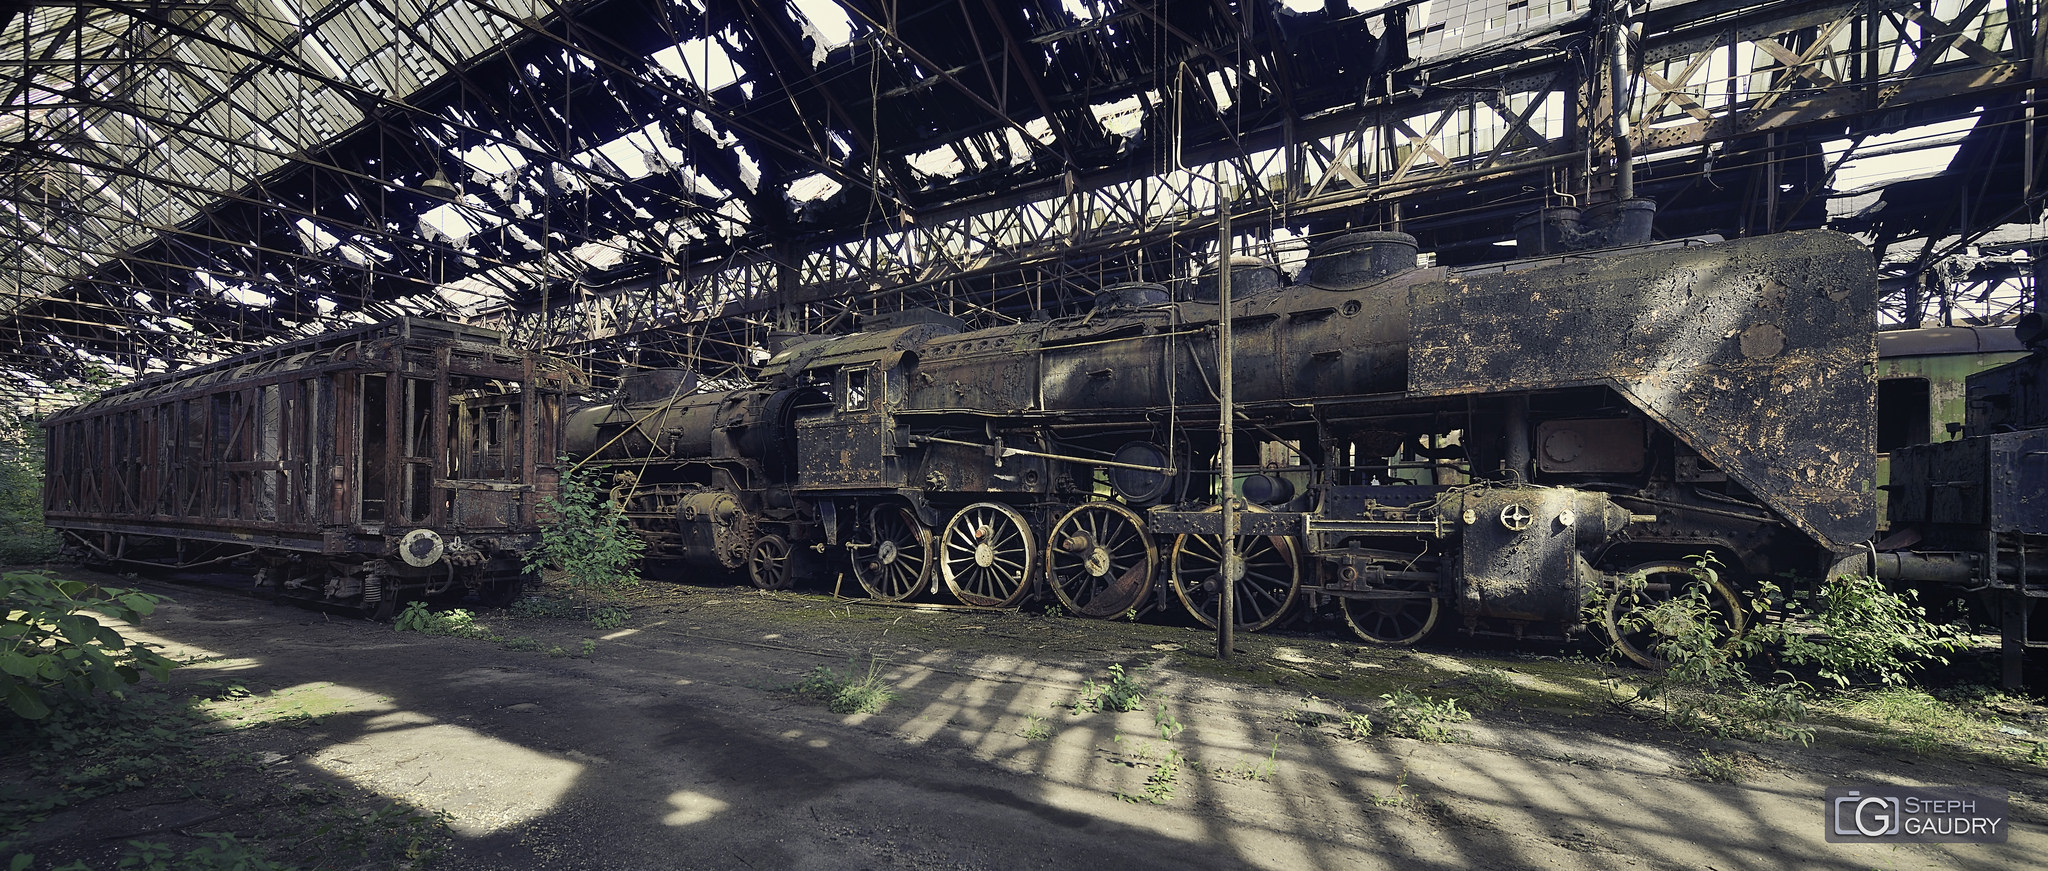 Abandoned steam train [Cliquez pour lancer le diaporama]